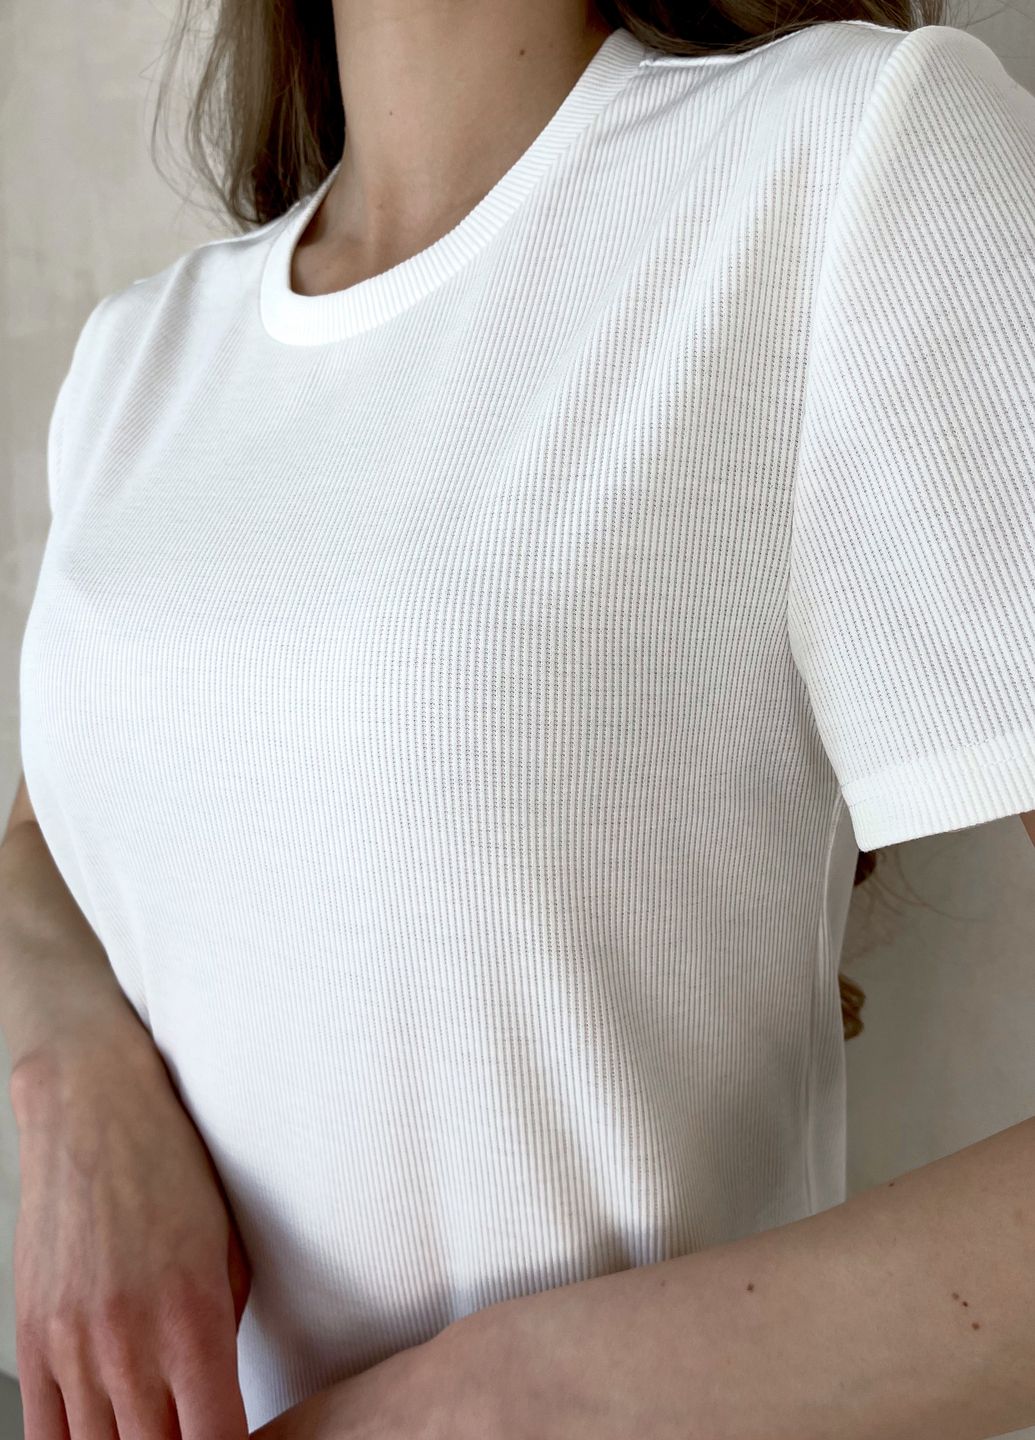 Купить Платье-футболка до колена в рубчик бирюзовое Merlini Милан 700000145 размер 42-44 (S-M) в интернет-магазине